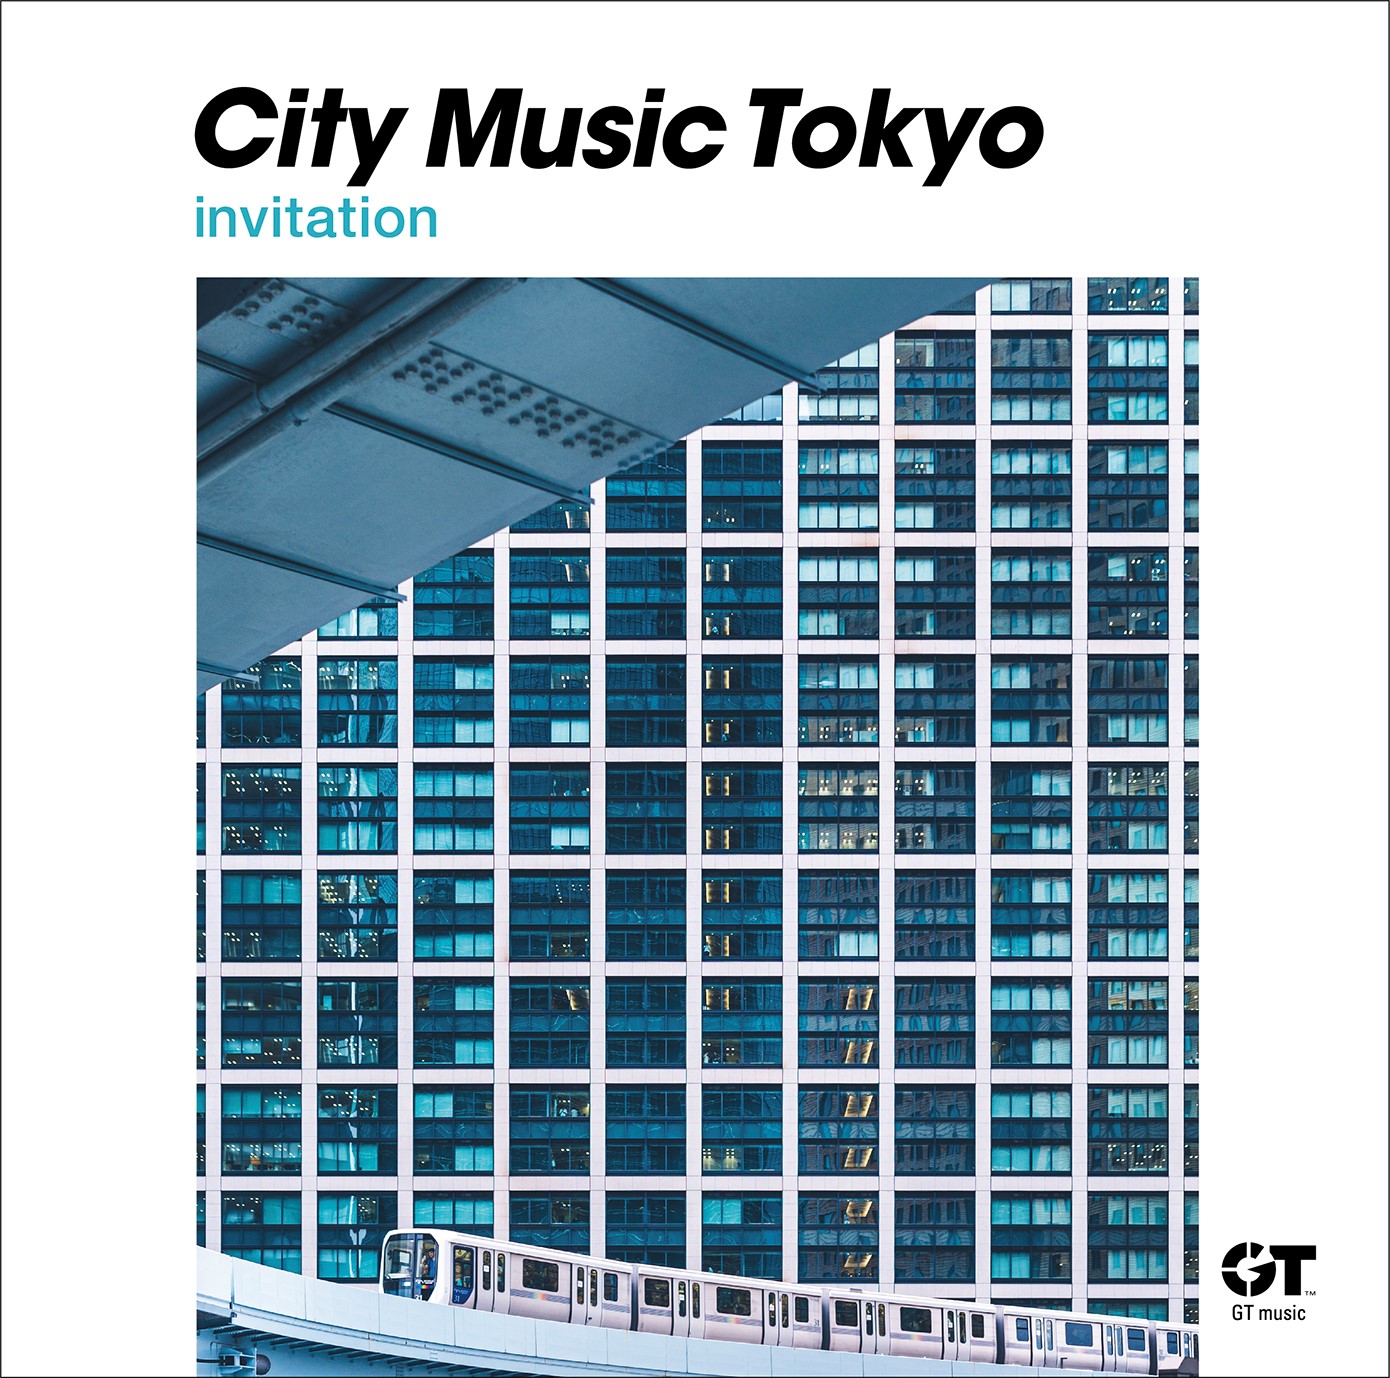 CITY MUSIC TOKYO invitation 2020年11月4日発売 流線型の主宰者である 